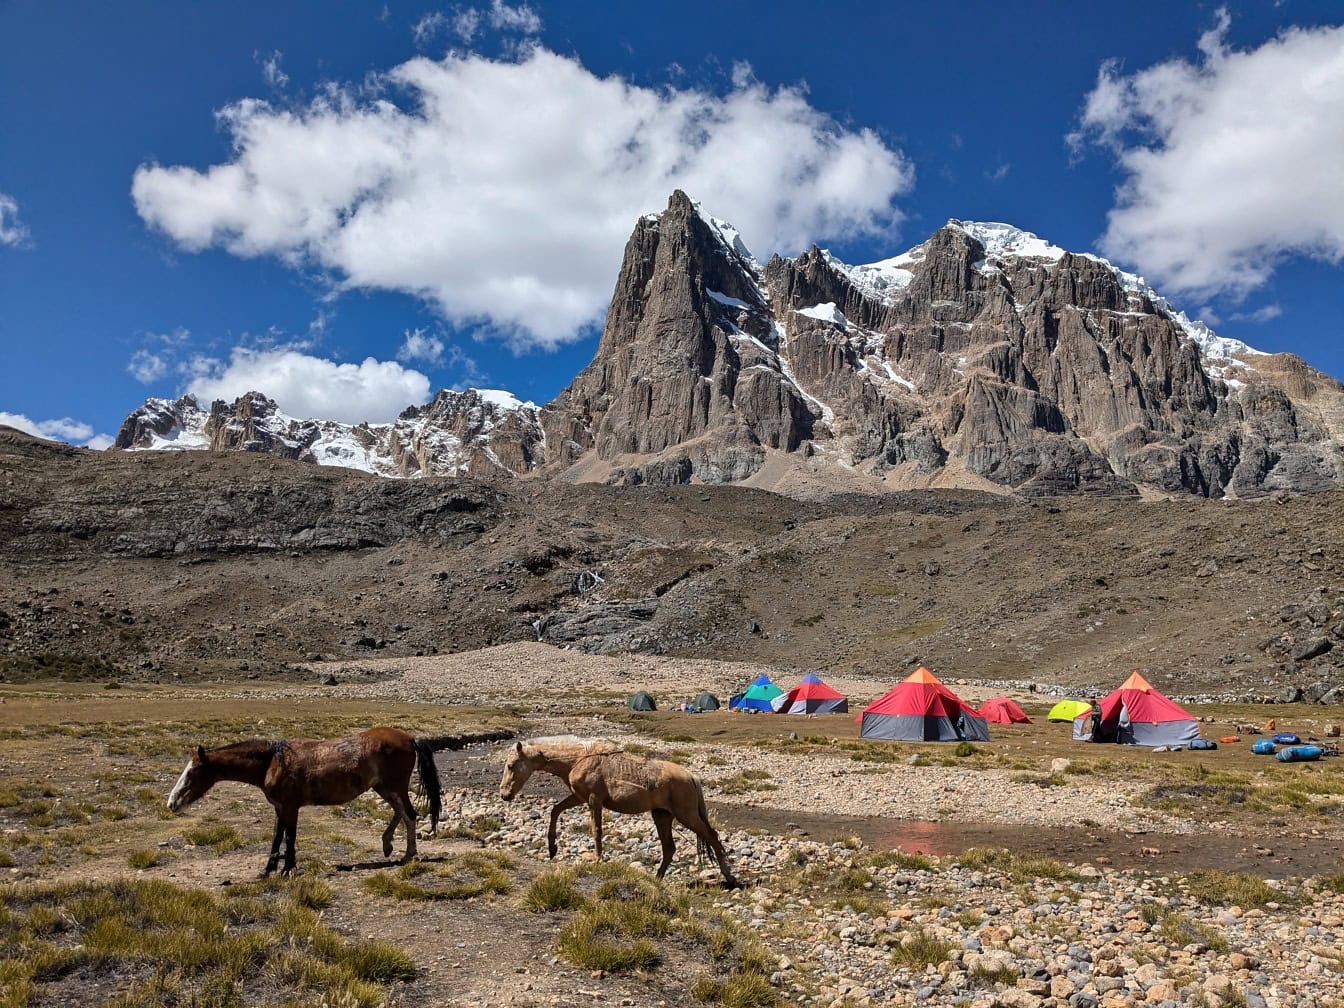 Caballos caminando en el campamento con tiendas de campaña en la Cordillera Huayhuash en los Andes de Perú en América del Sur